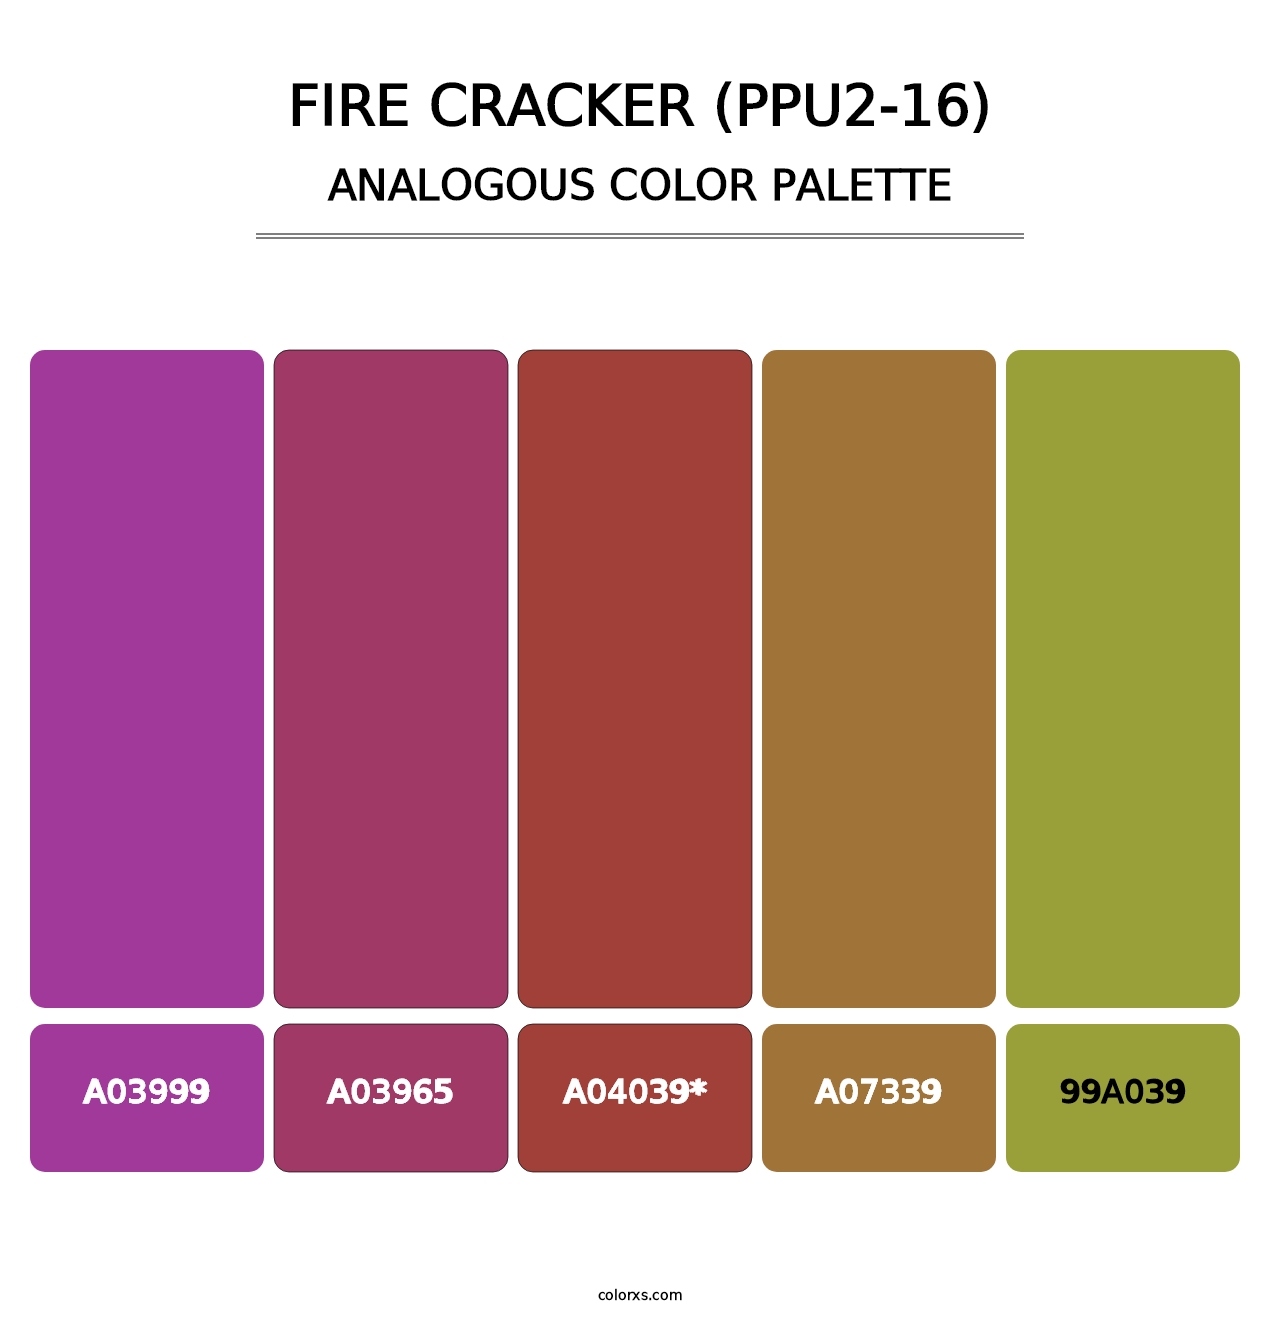 Fire Cracker (PPU2-16) - Analogous Color Palette